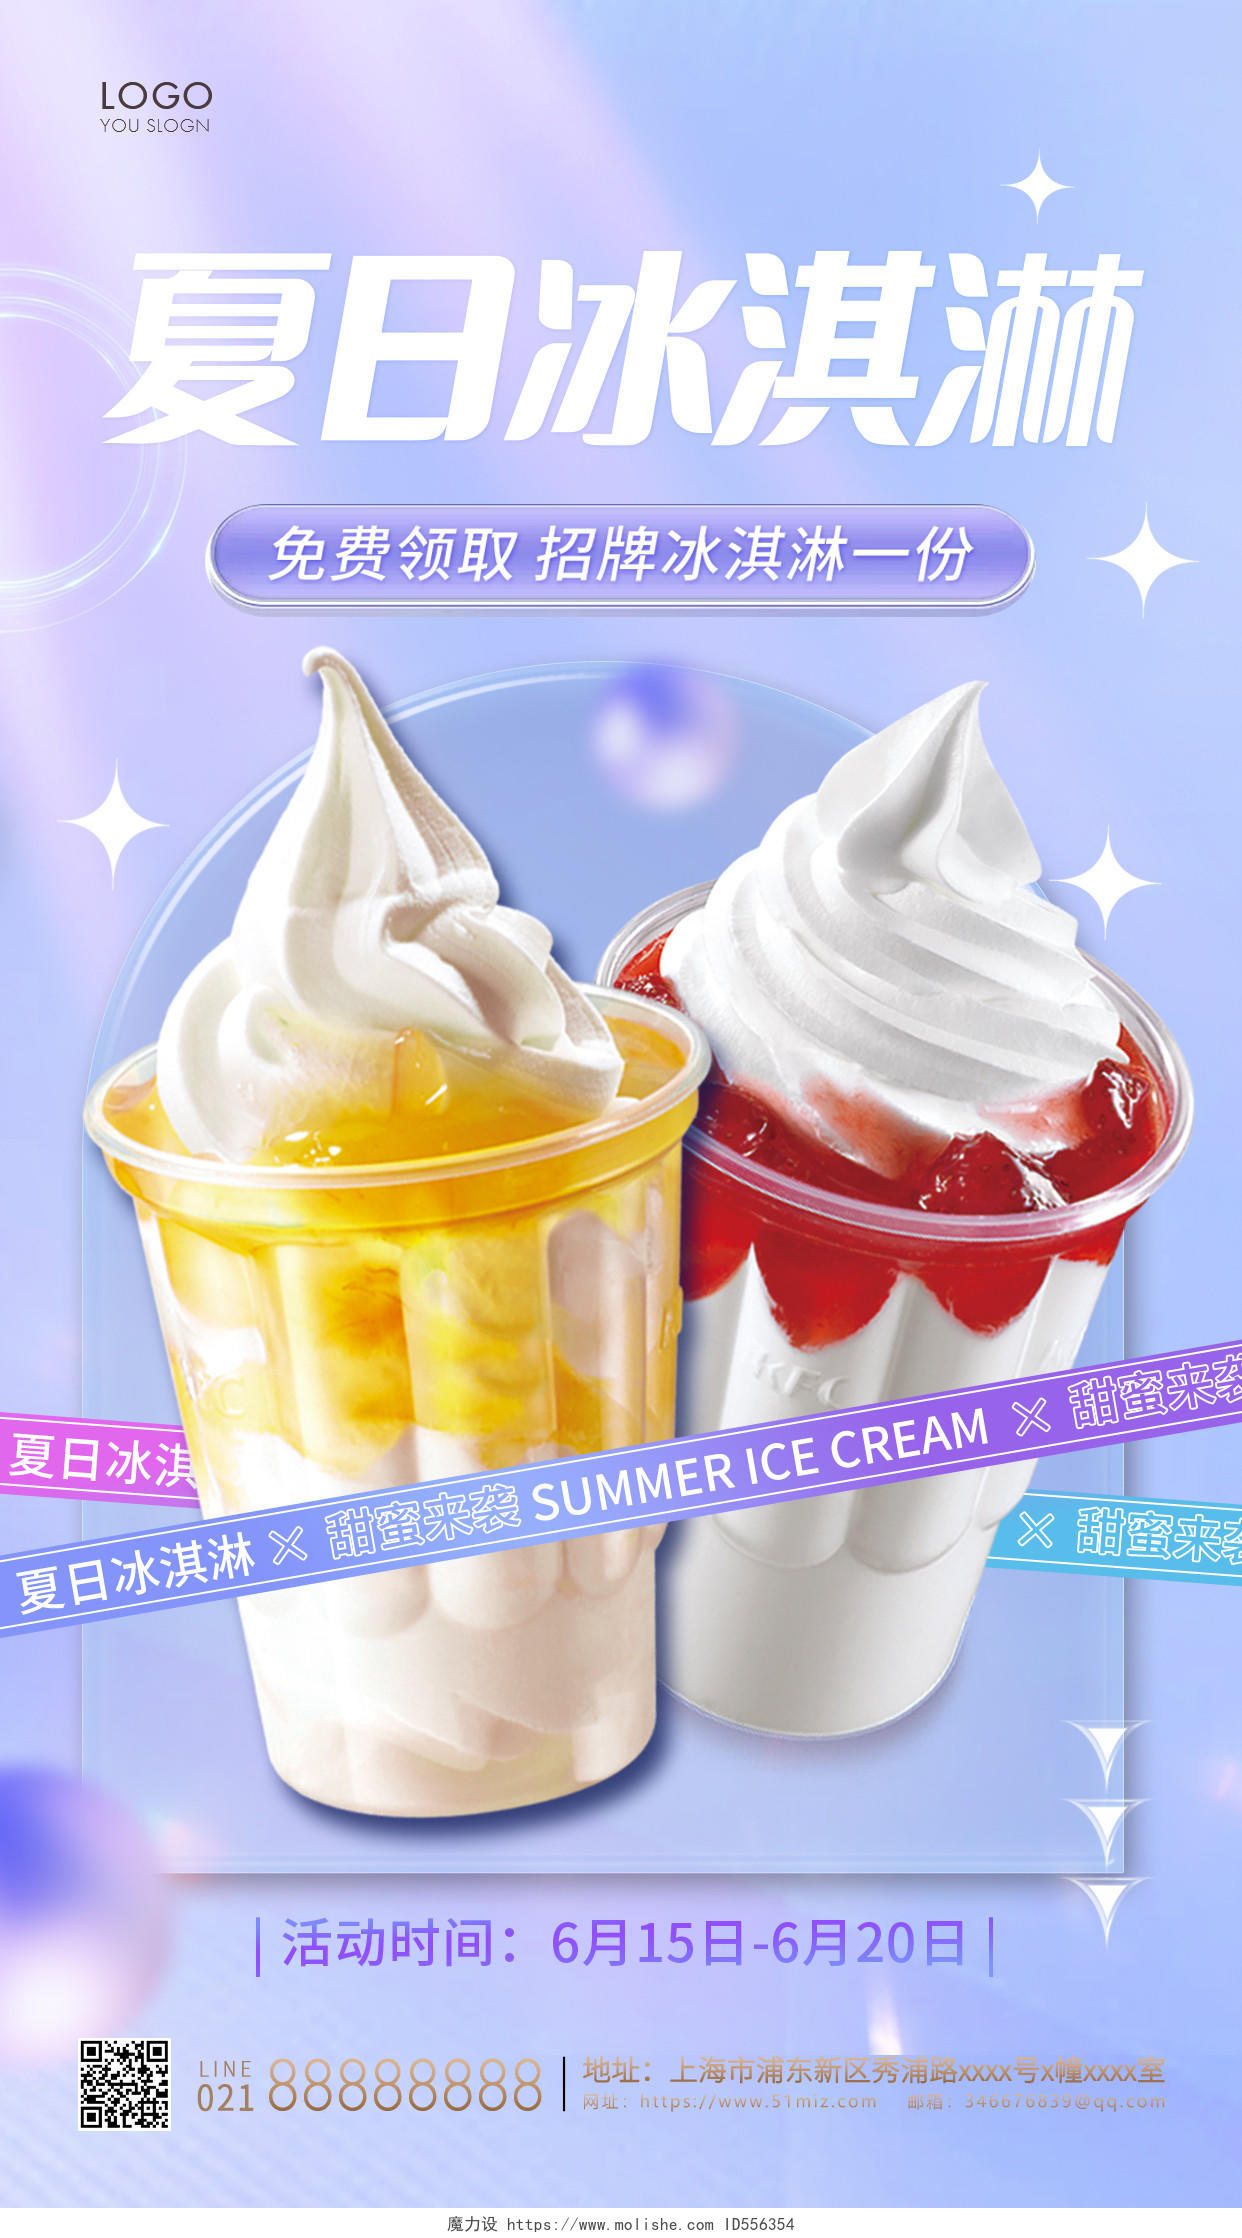 紫色简约夏日冰淇淋手机海报夏天冰淇淋雪糕